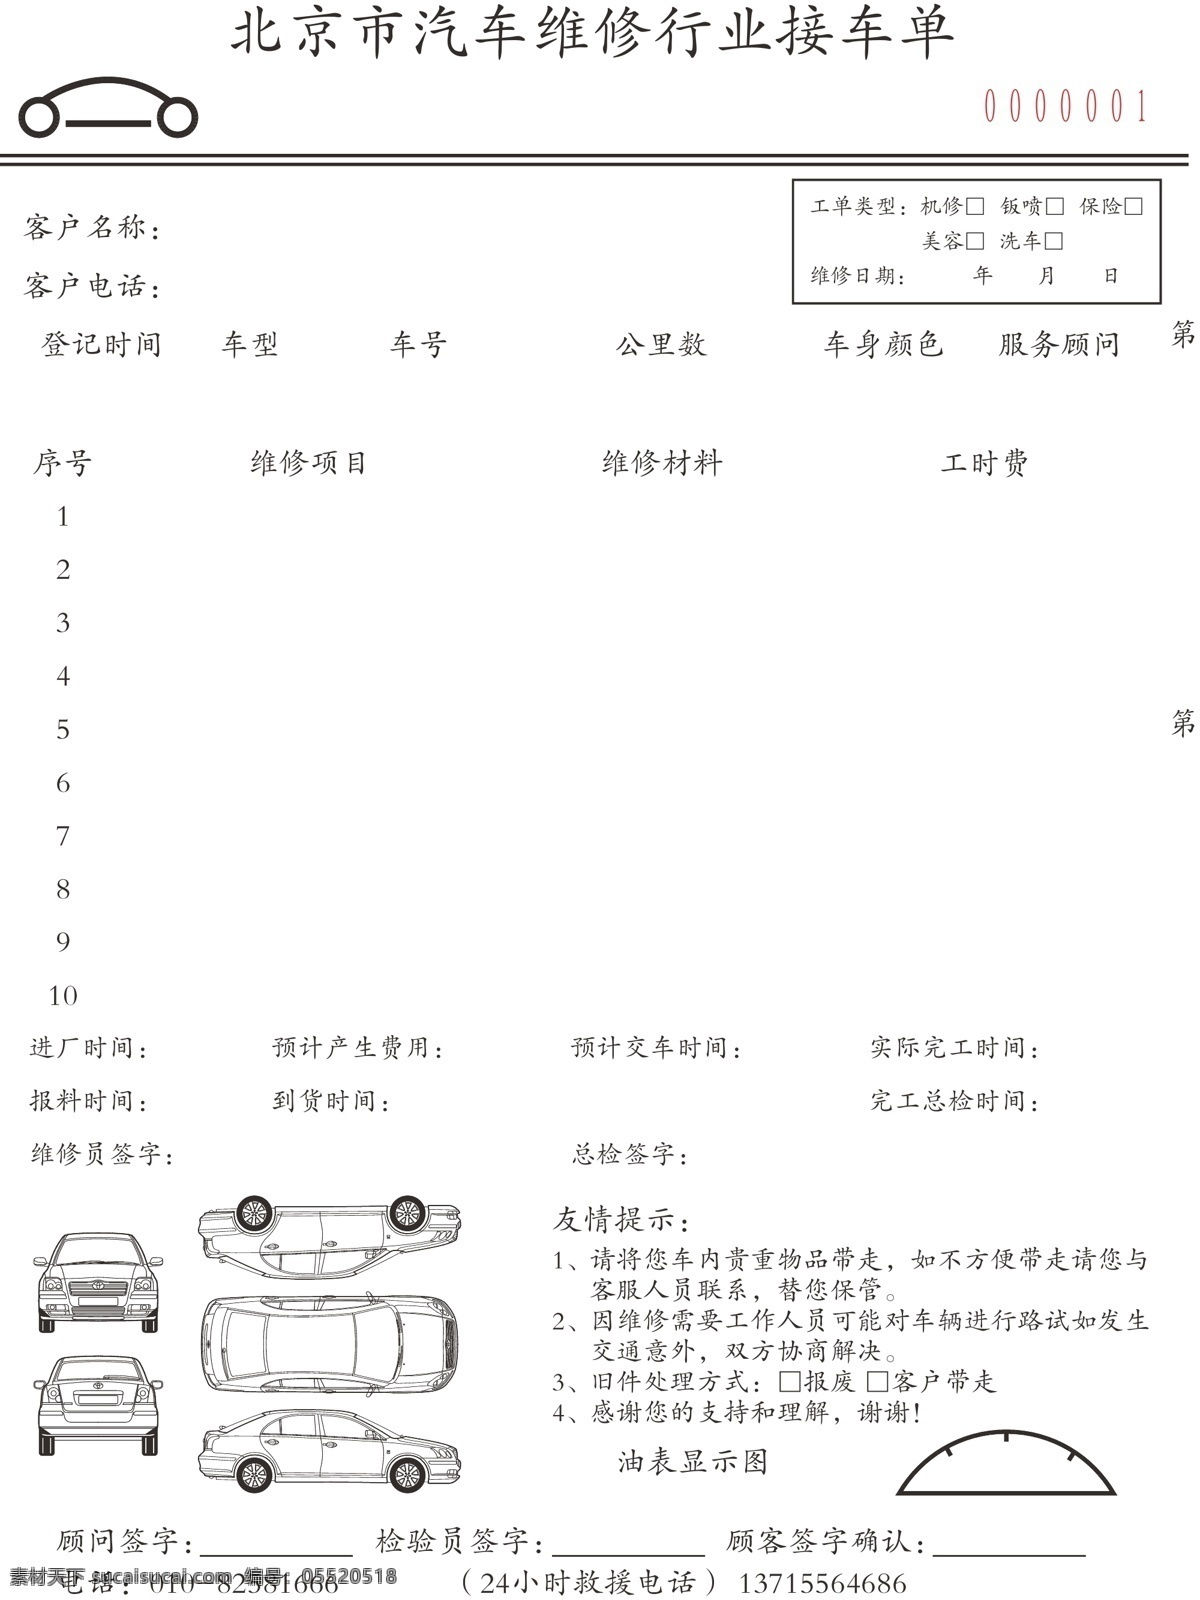 汽车维修单 接车单 汽车模型 卡通汽车 维修服务单 维修表格 印刷单 二联单 宣传设计